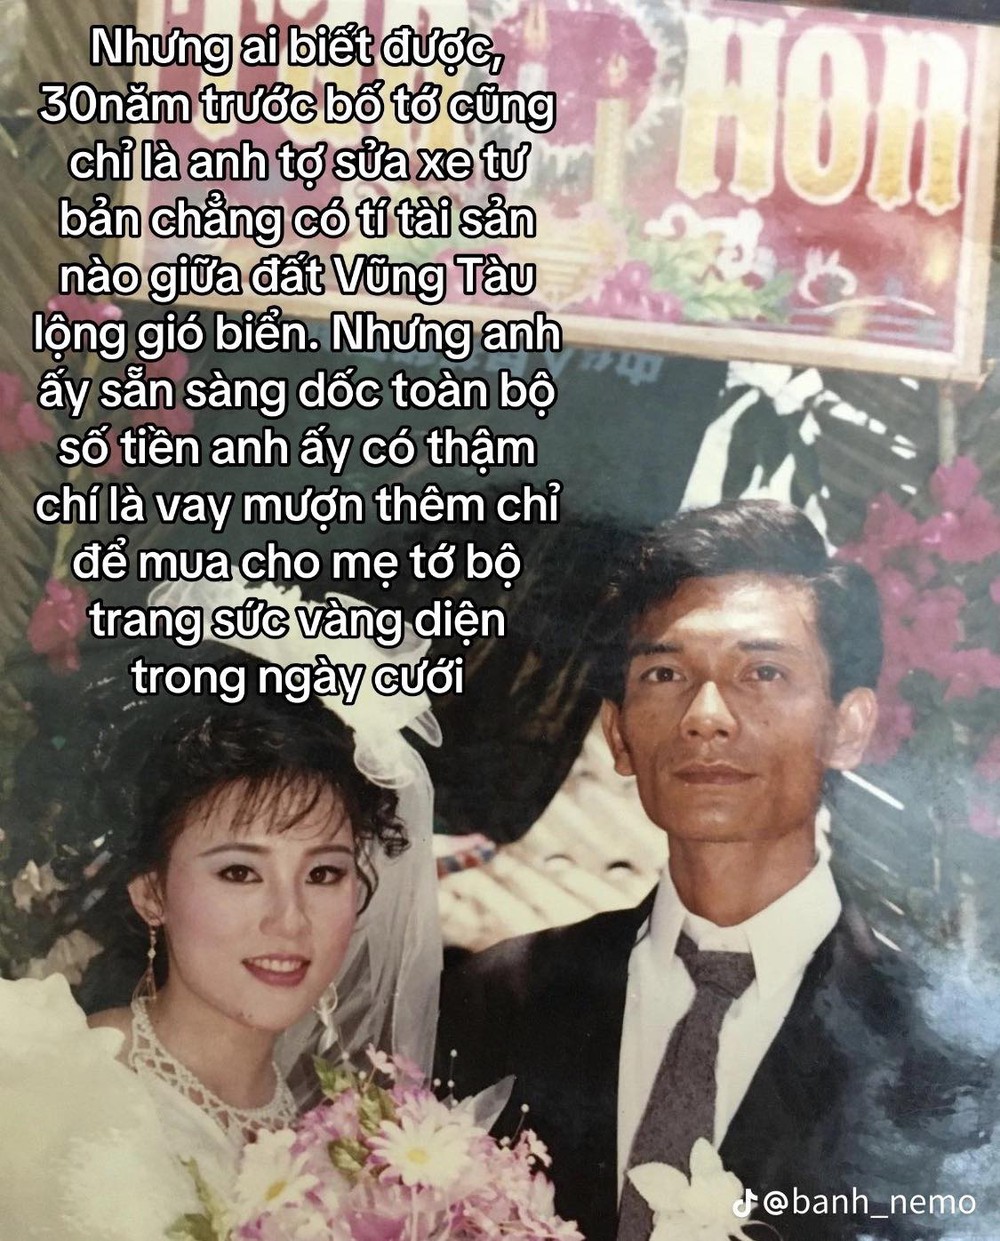 Đám cưới 30 năm trước hút 5 triệu lượt tương tác trên Tiktok, nhan sắc cô dâu khiến tất cả trầm trồ - Ảnh 2.